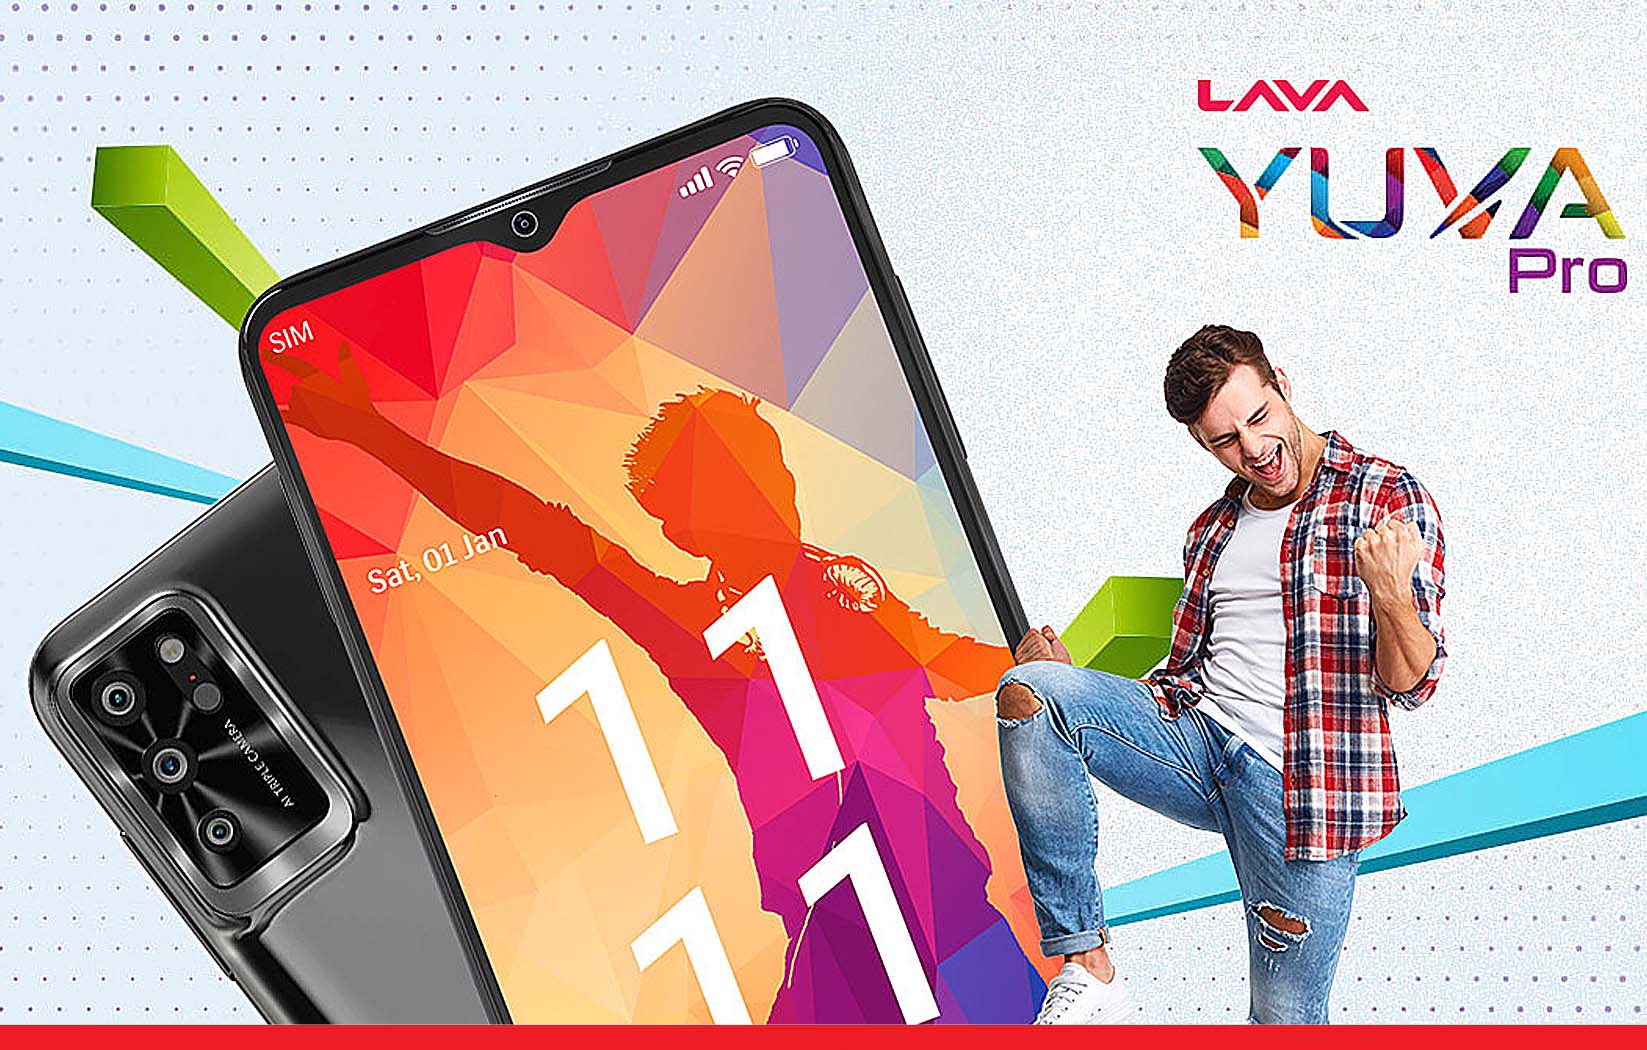 Lava Yuva Pro स्मार्टफोन हुआ लॉन्च, ट्रिपल-कैमरा सेटअप से लैस है डिवाइस